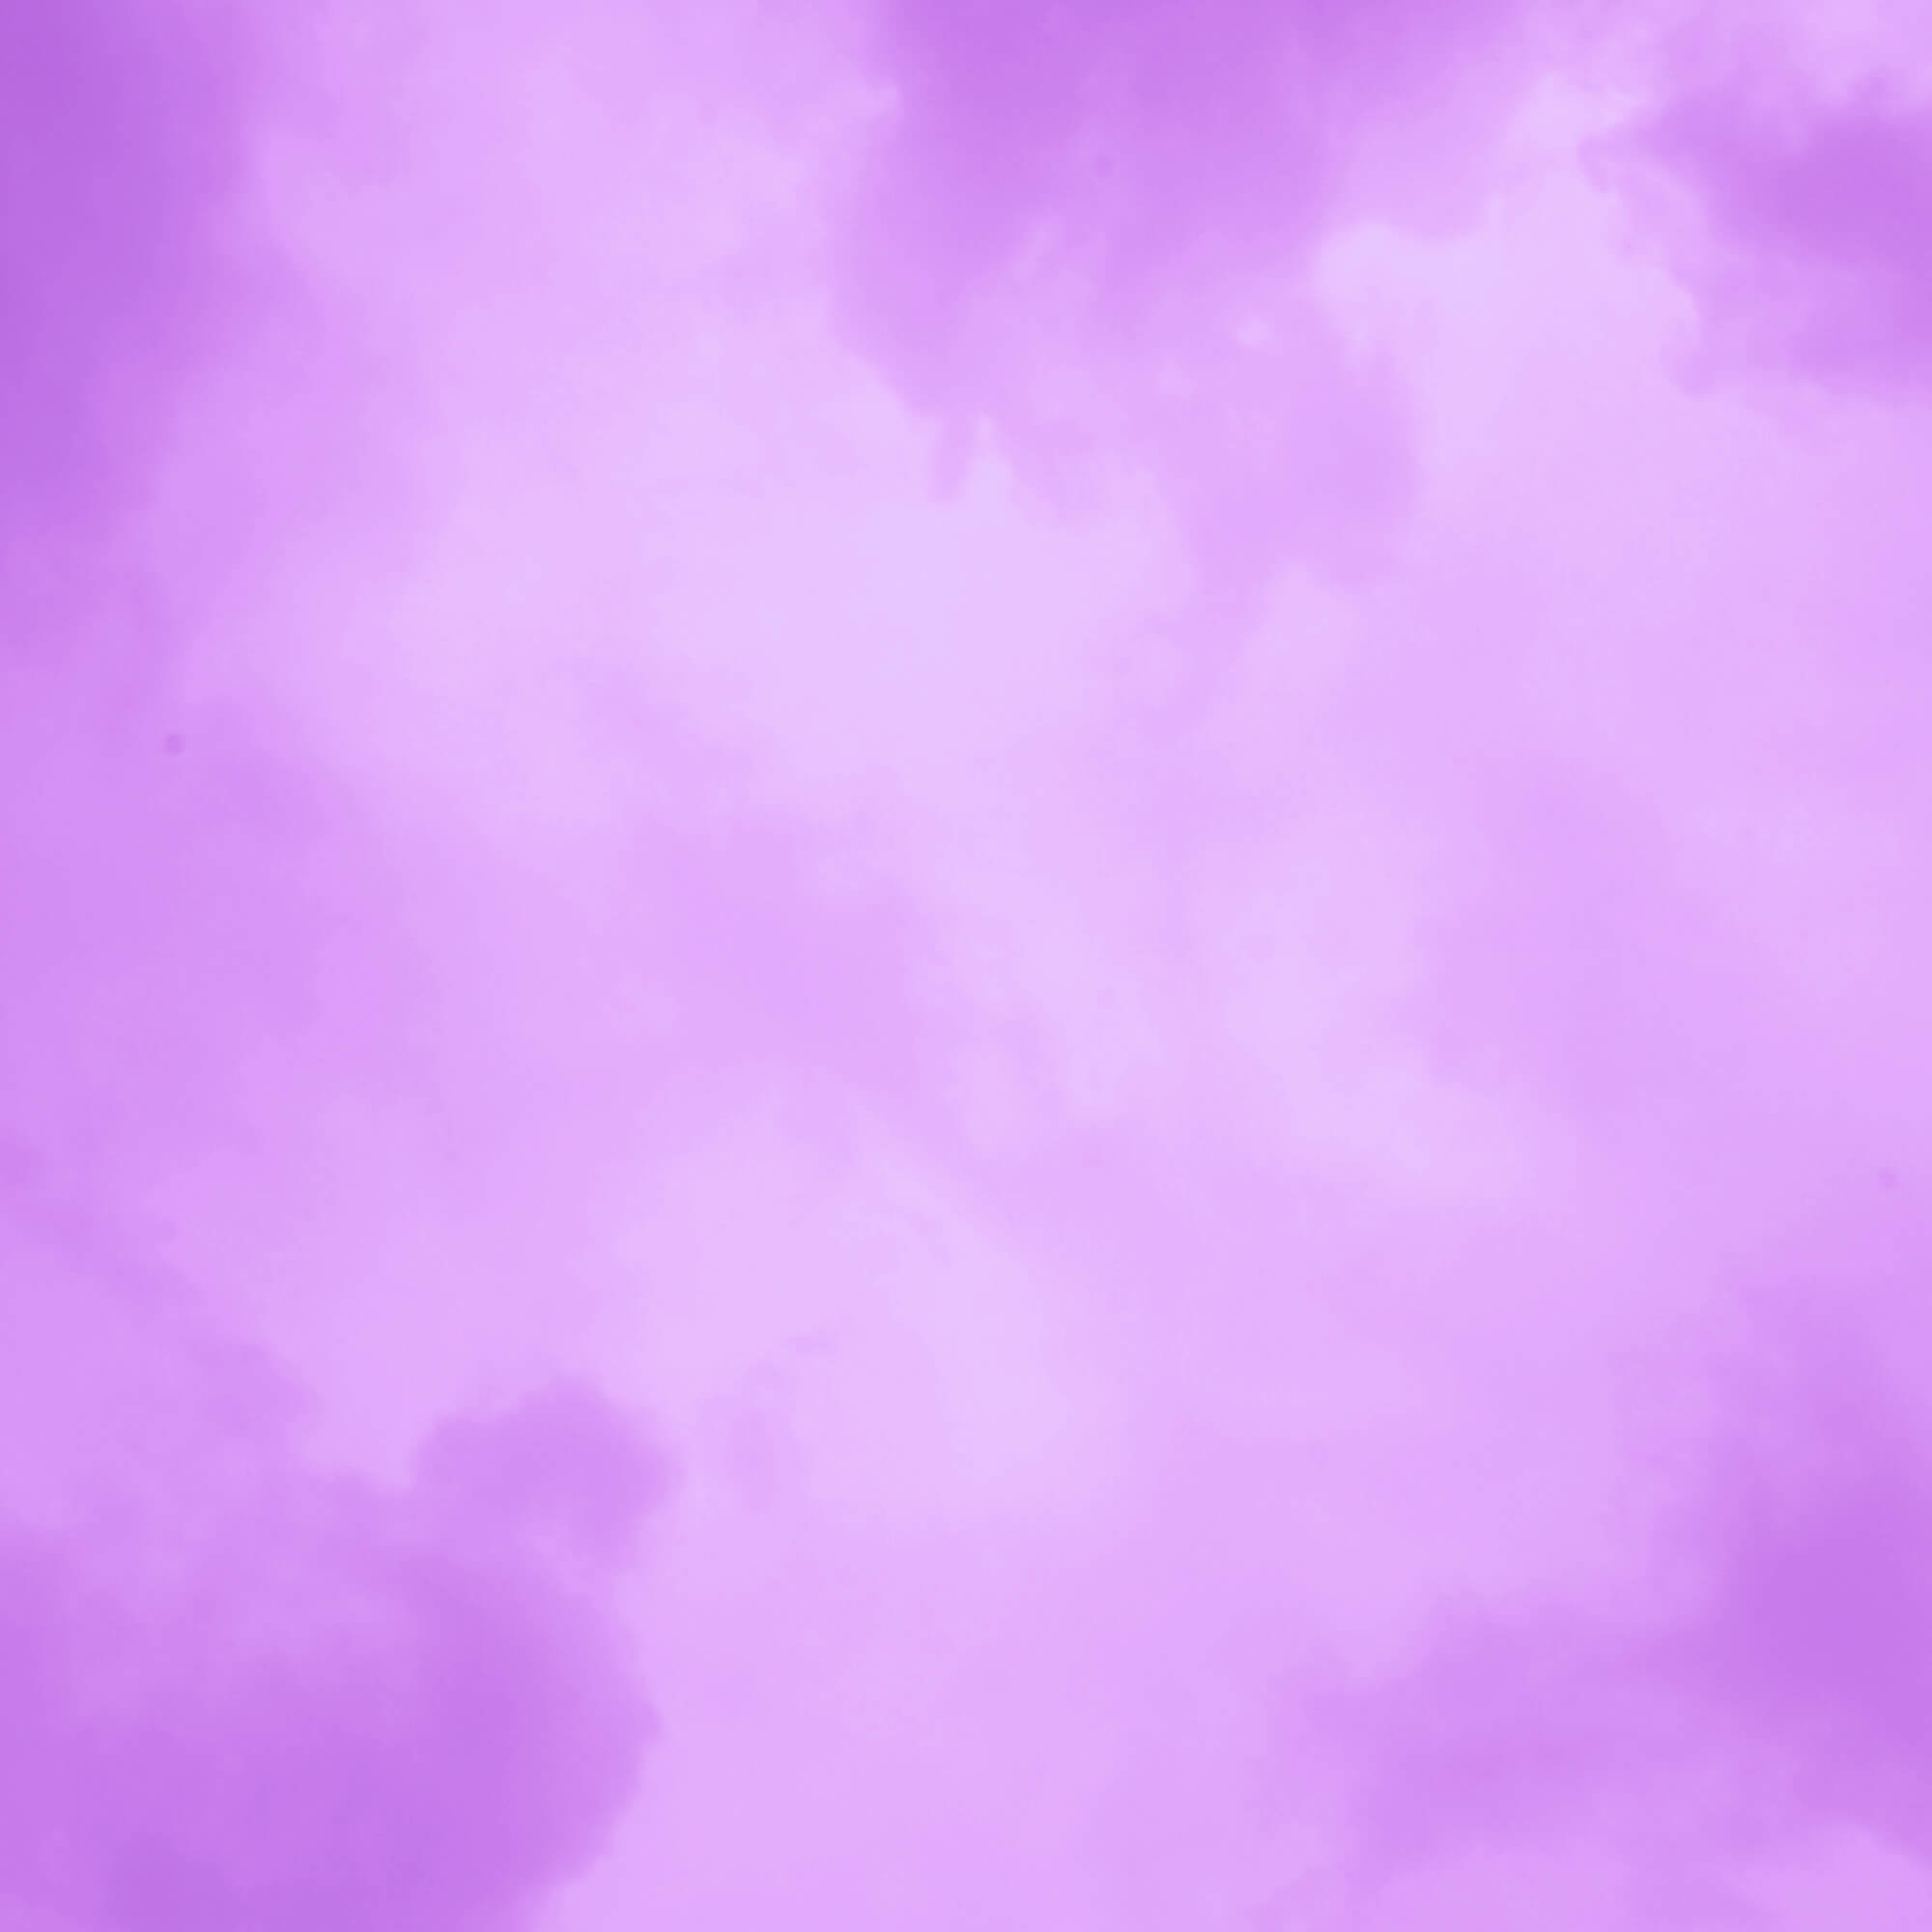 hd backgrounds purple